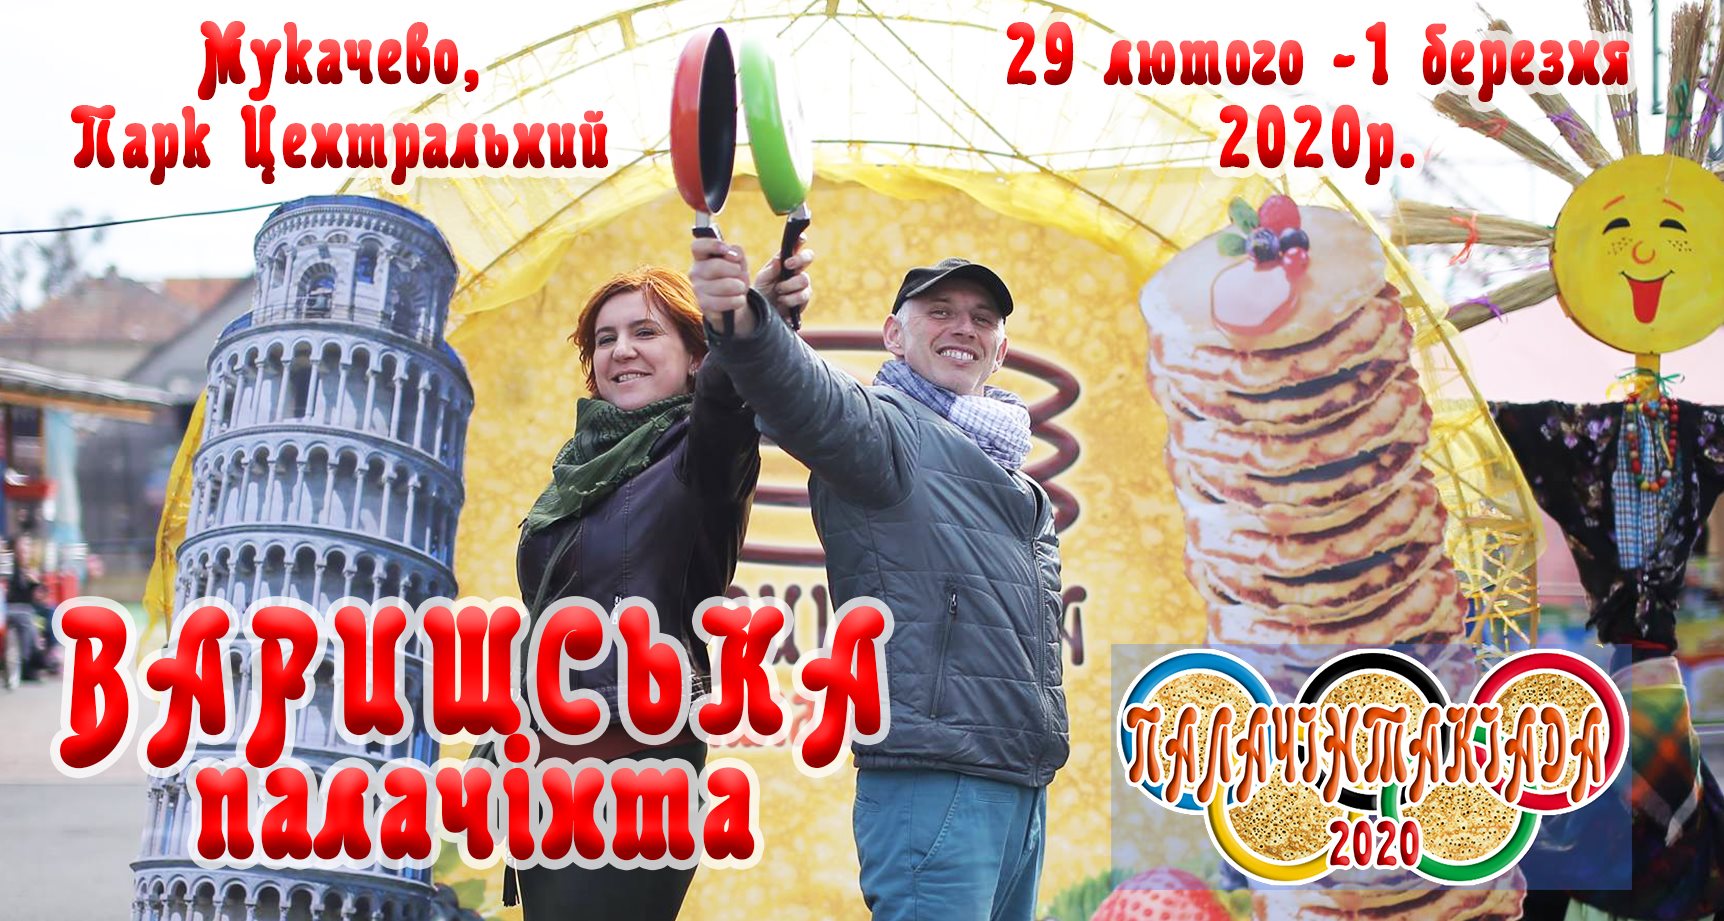 На вихідних у Мукачеві пригощатиме "Варишська палачінта"